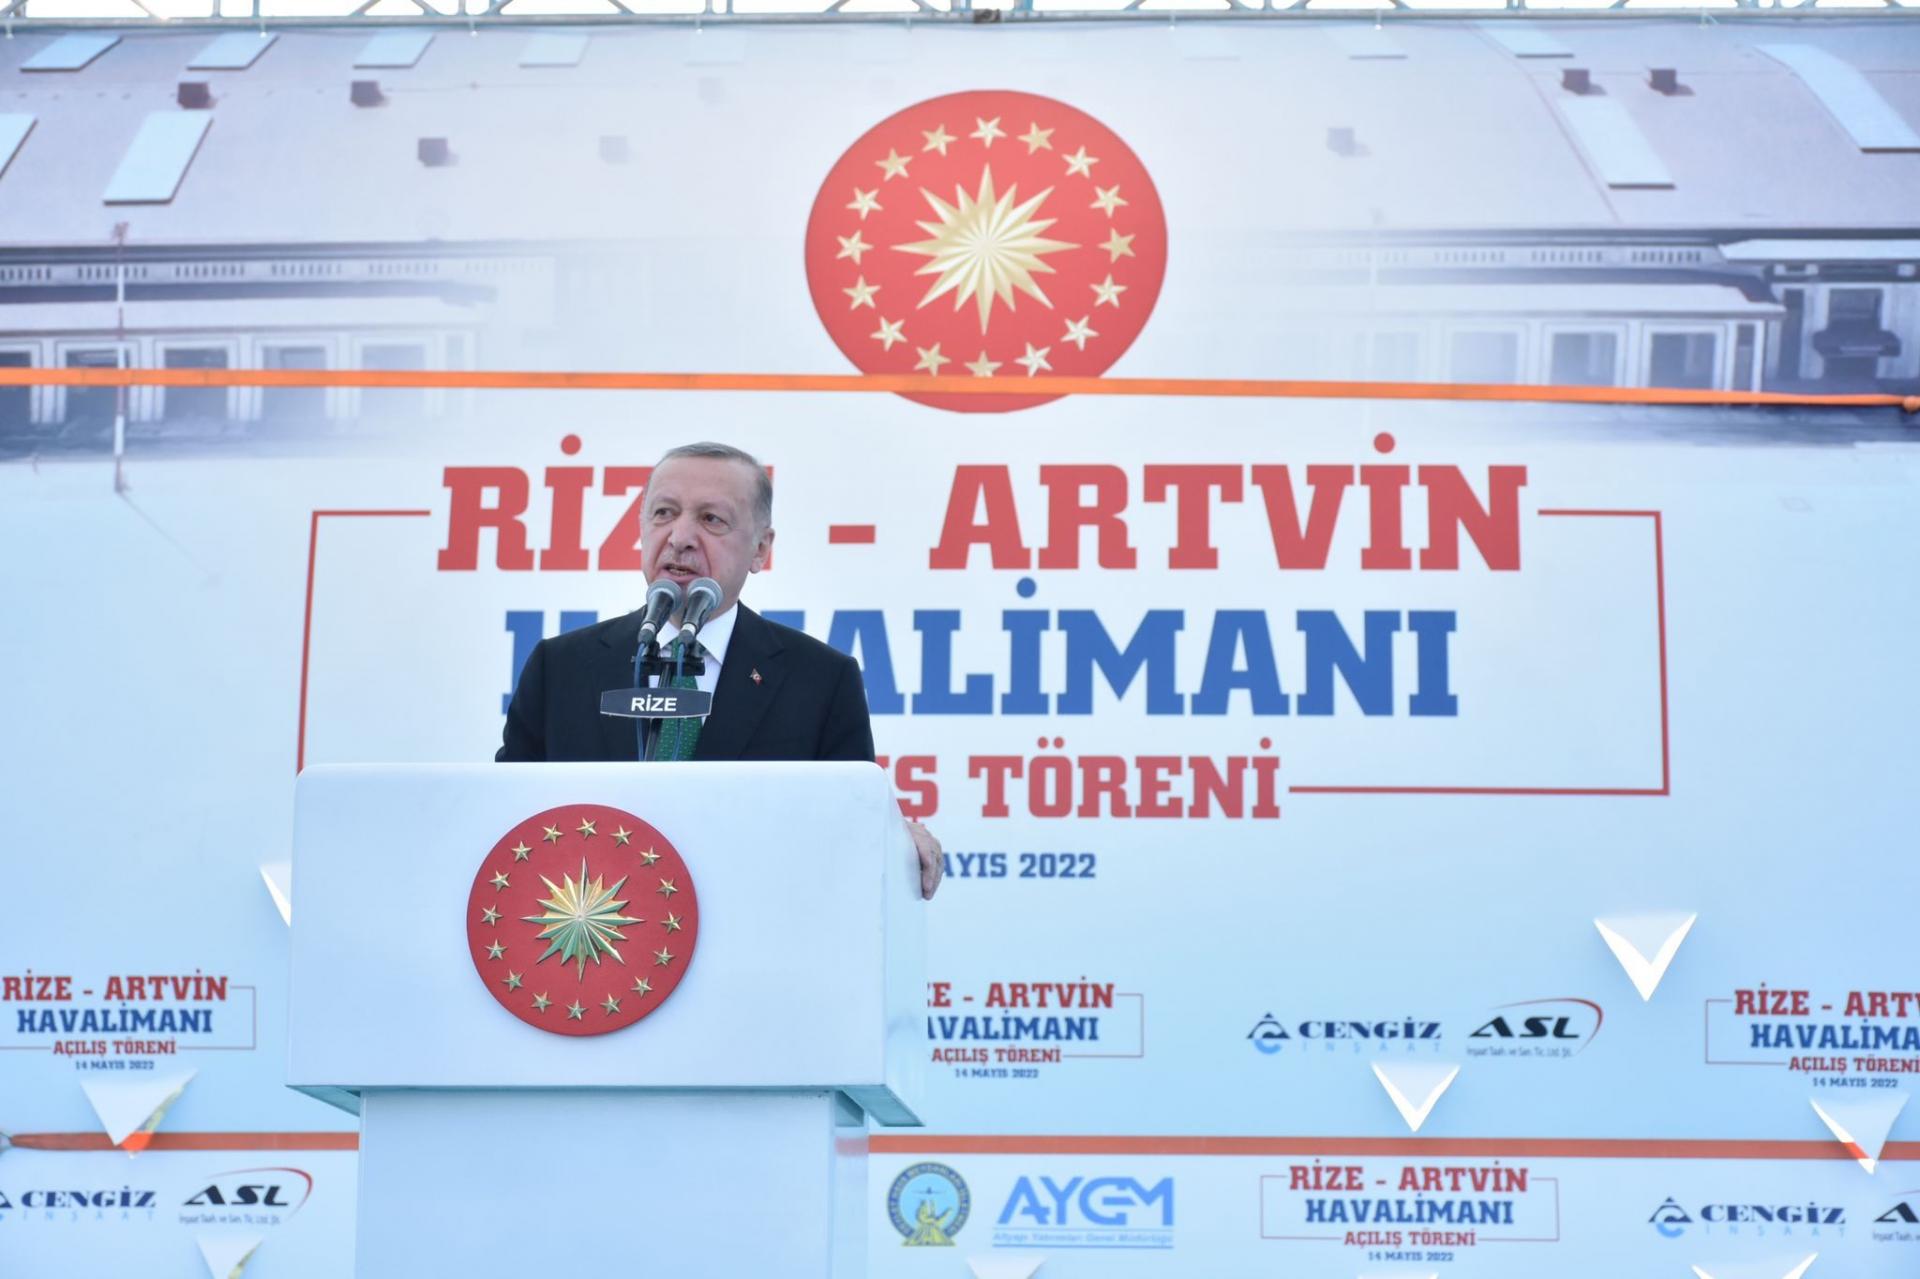 Претседателот Ердоган свечено го отвори новоизградениот аеродром Ризе-Артвин на црноморскиот брег